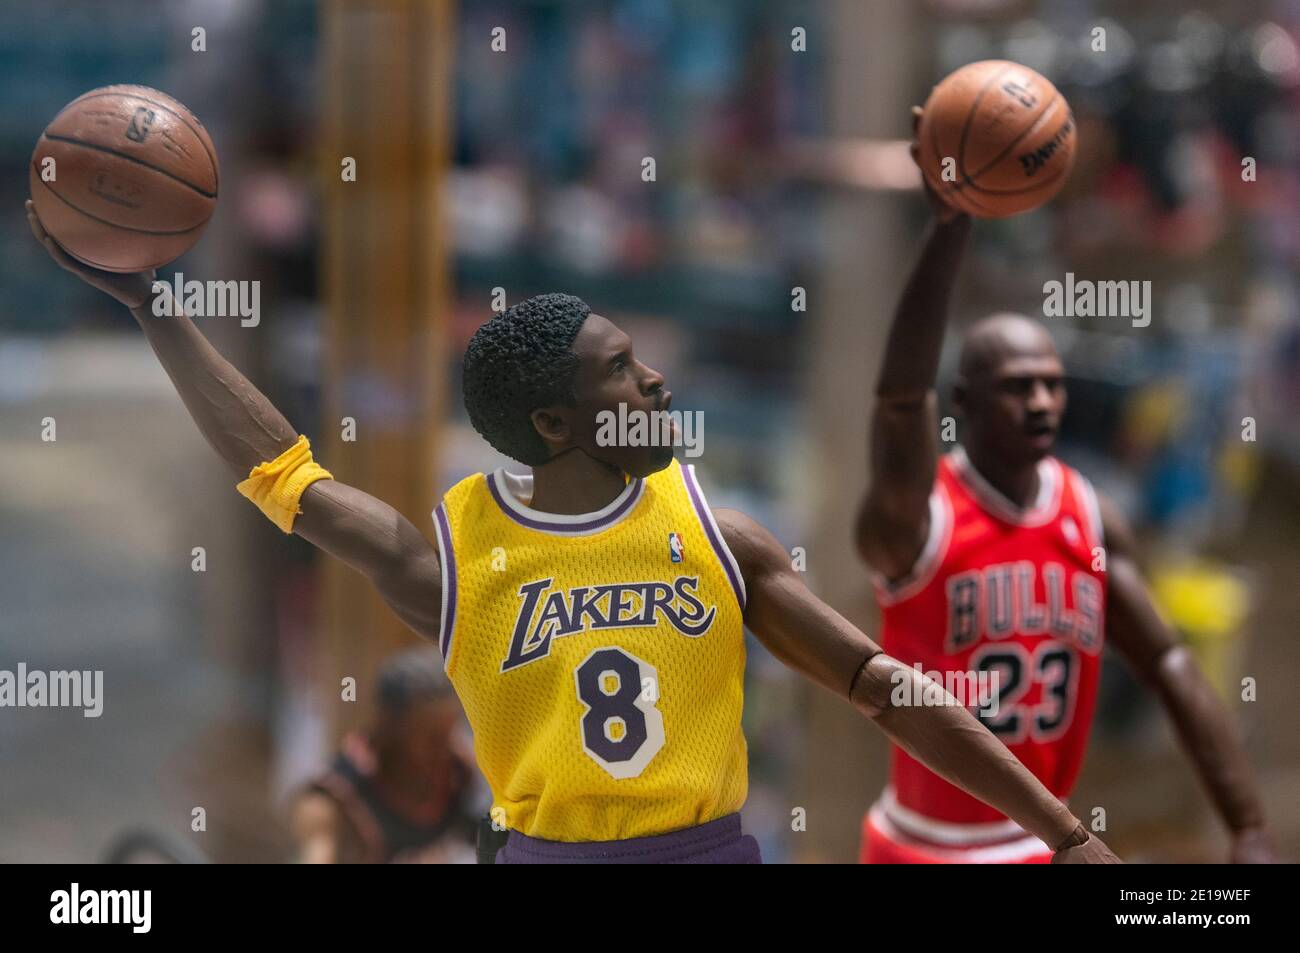 Basket sportive figurines d'action de la NBA de Lakers Kobe Bryant et Chicago Bulls Michael Jordan vues dans un magasin à Hong Kong. Banque D'Images